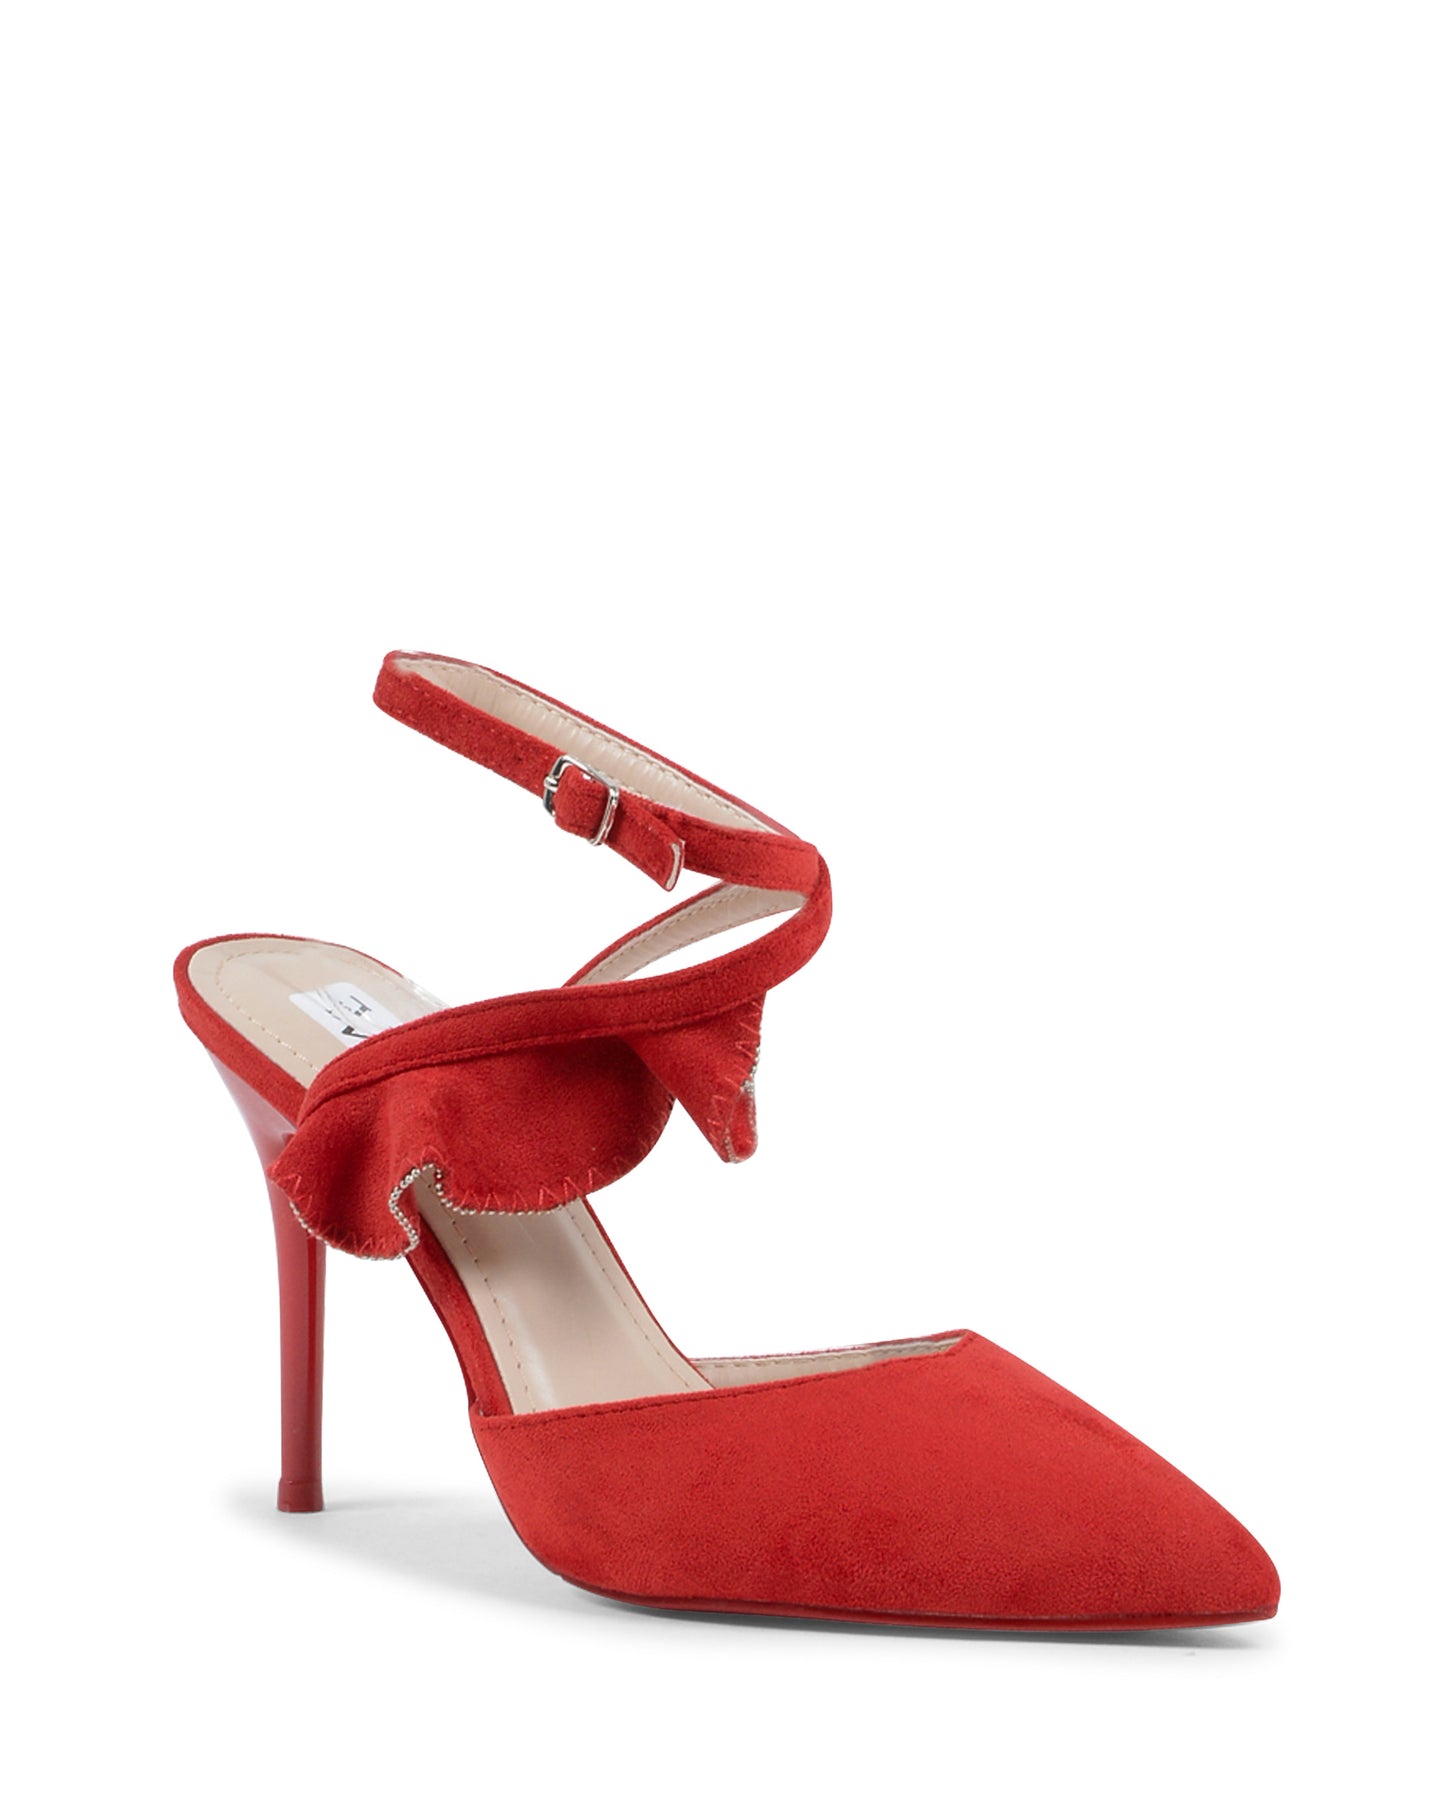 19V69 Italia Womens Ankle Strap Sandal Red V151 RED